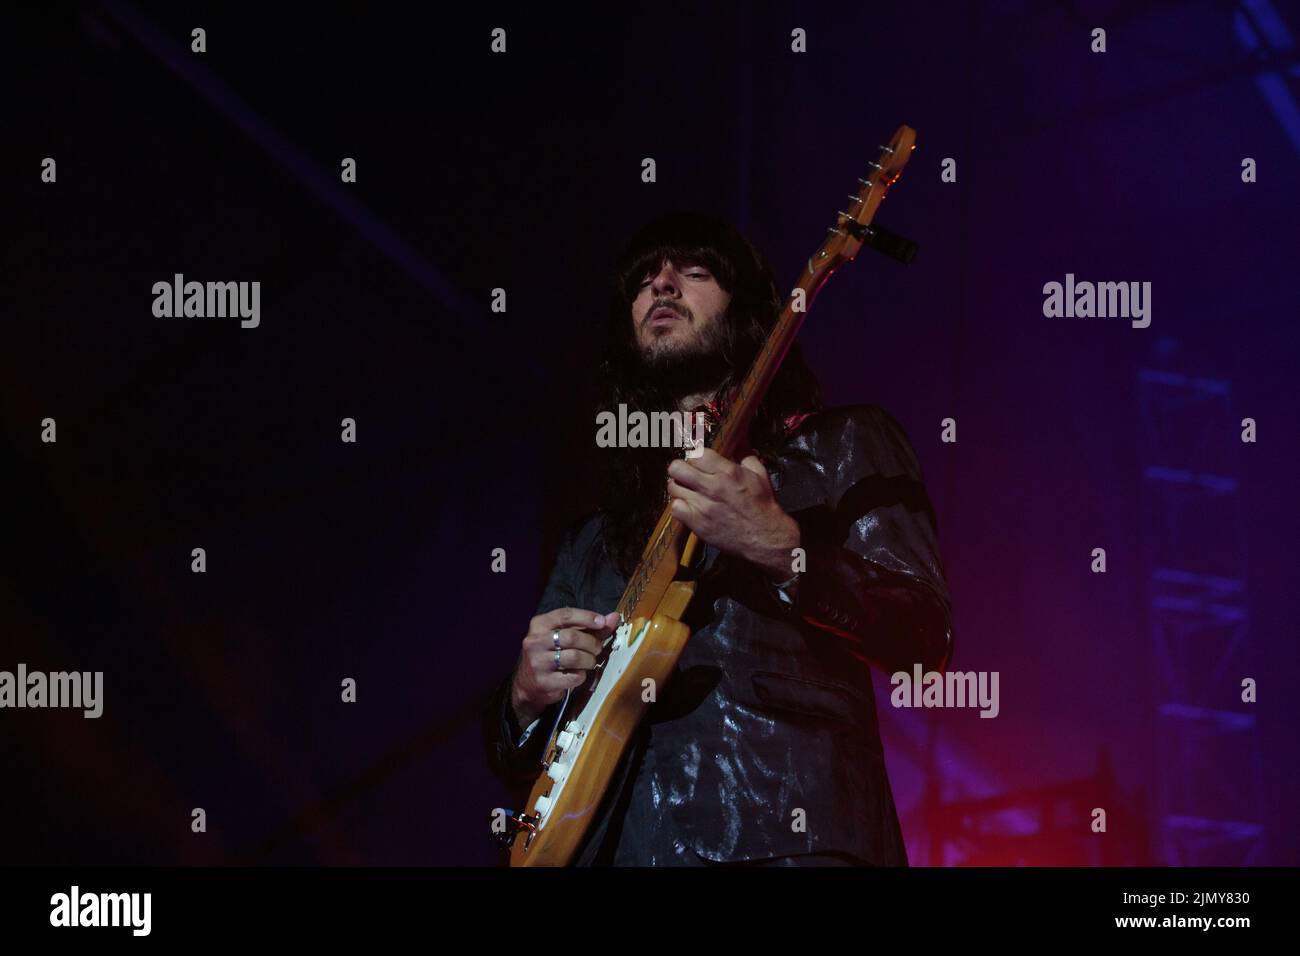 Le guitariste Mark Speer de Khruangbin se présentant sur scène Banque D'Images